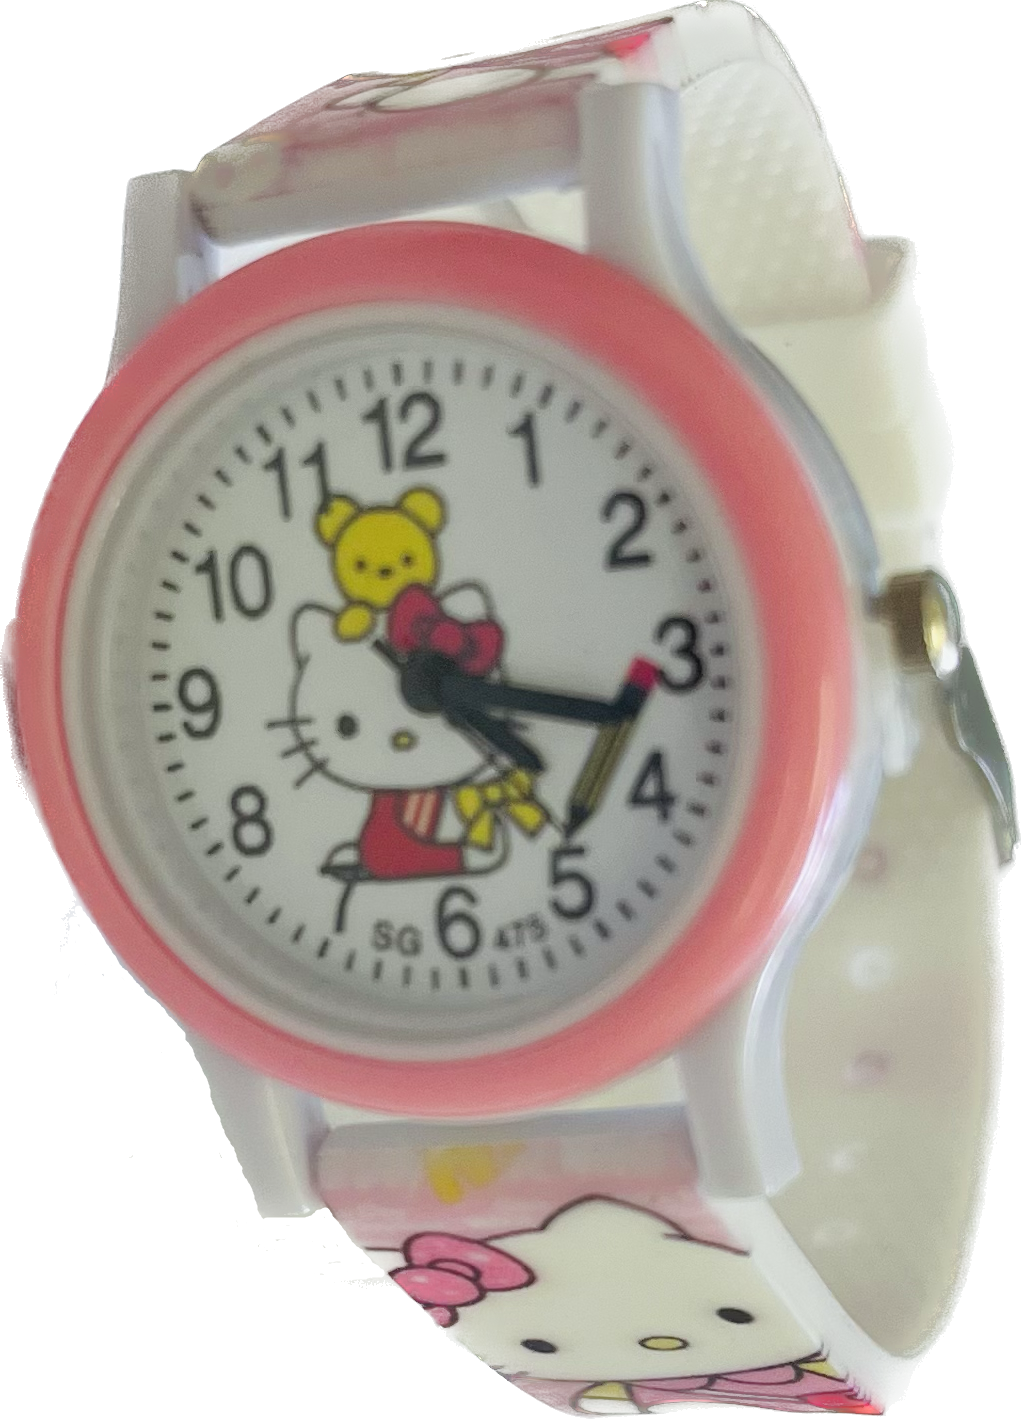 Načančaná.cz Dětské hodinky Hello Kitty s medvídkem